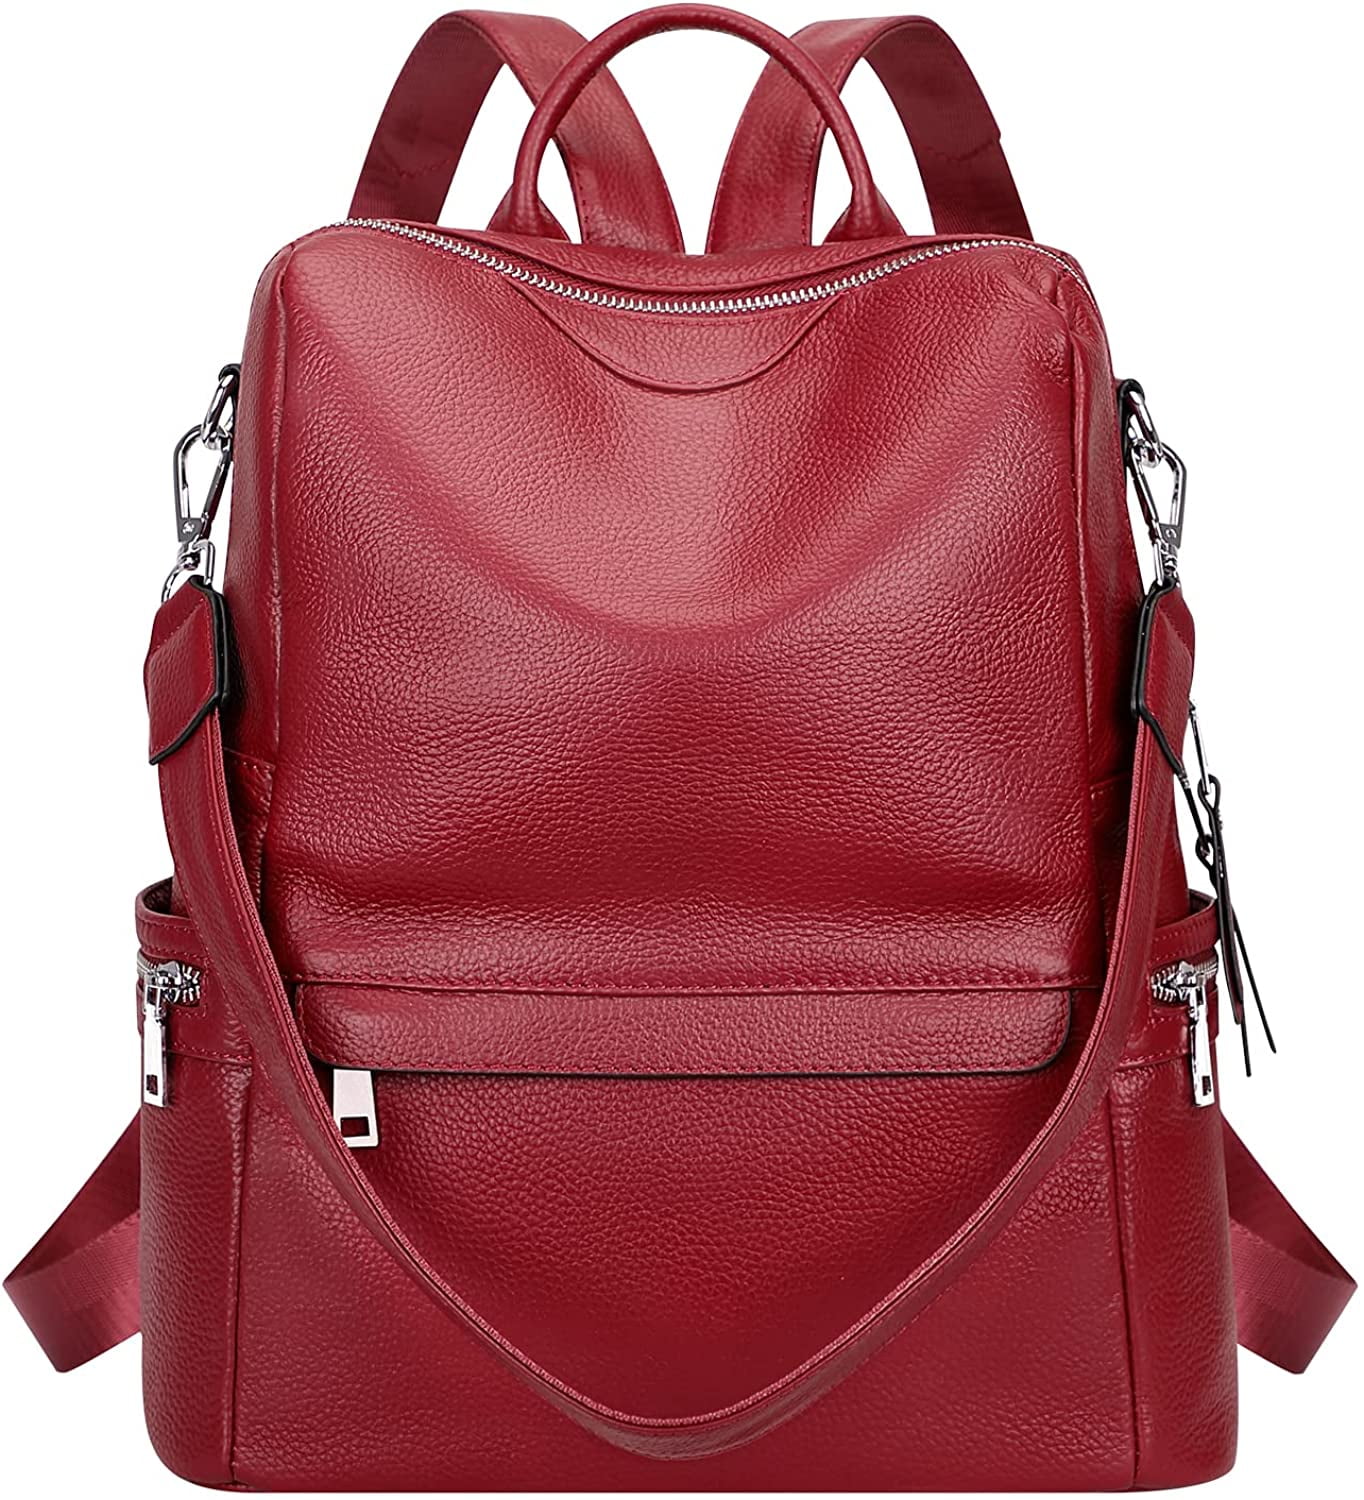 ALTOSY Women Real Leather Backpack Purse Elegant Ladies Shoulder Bag ...